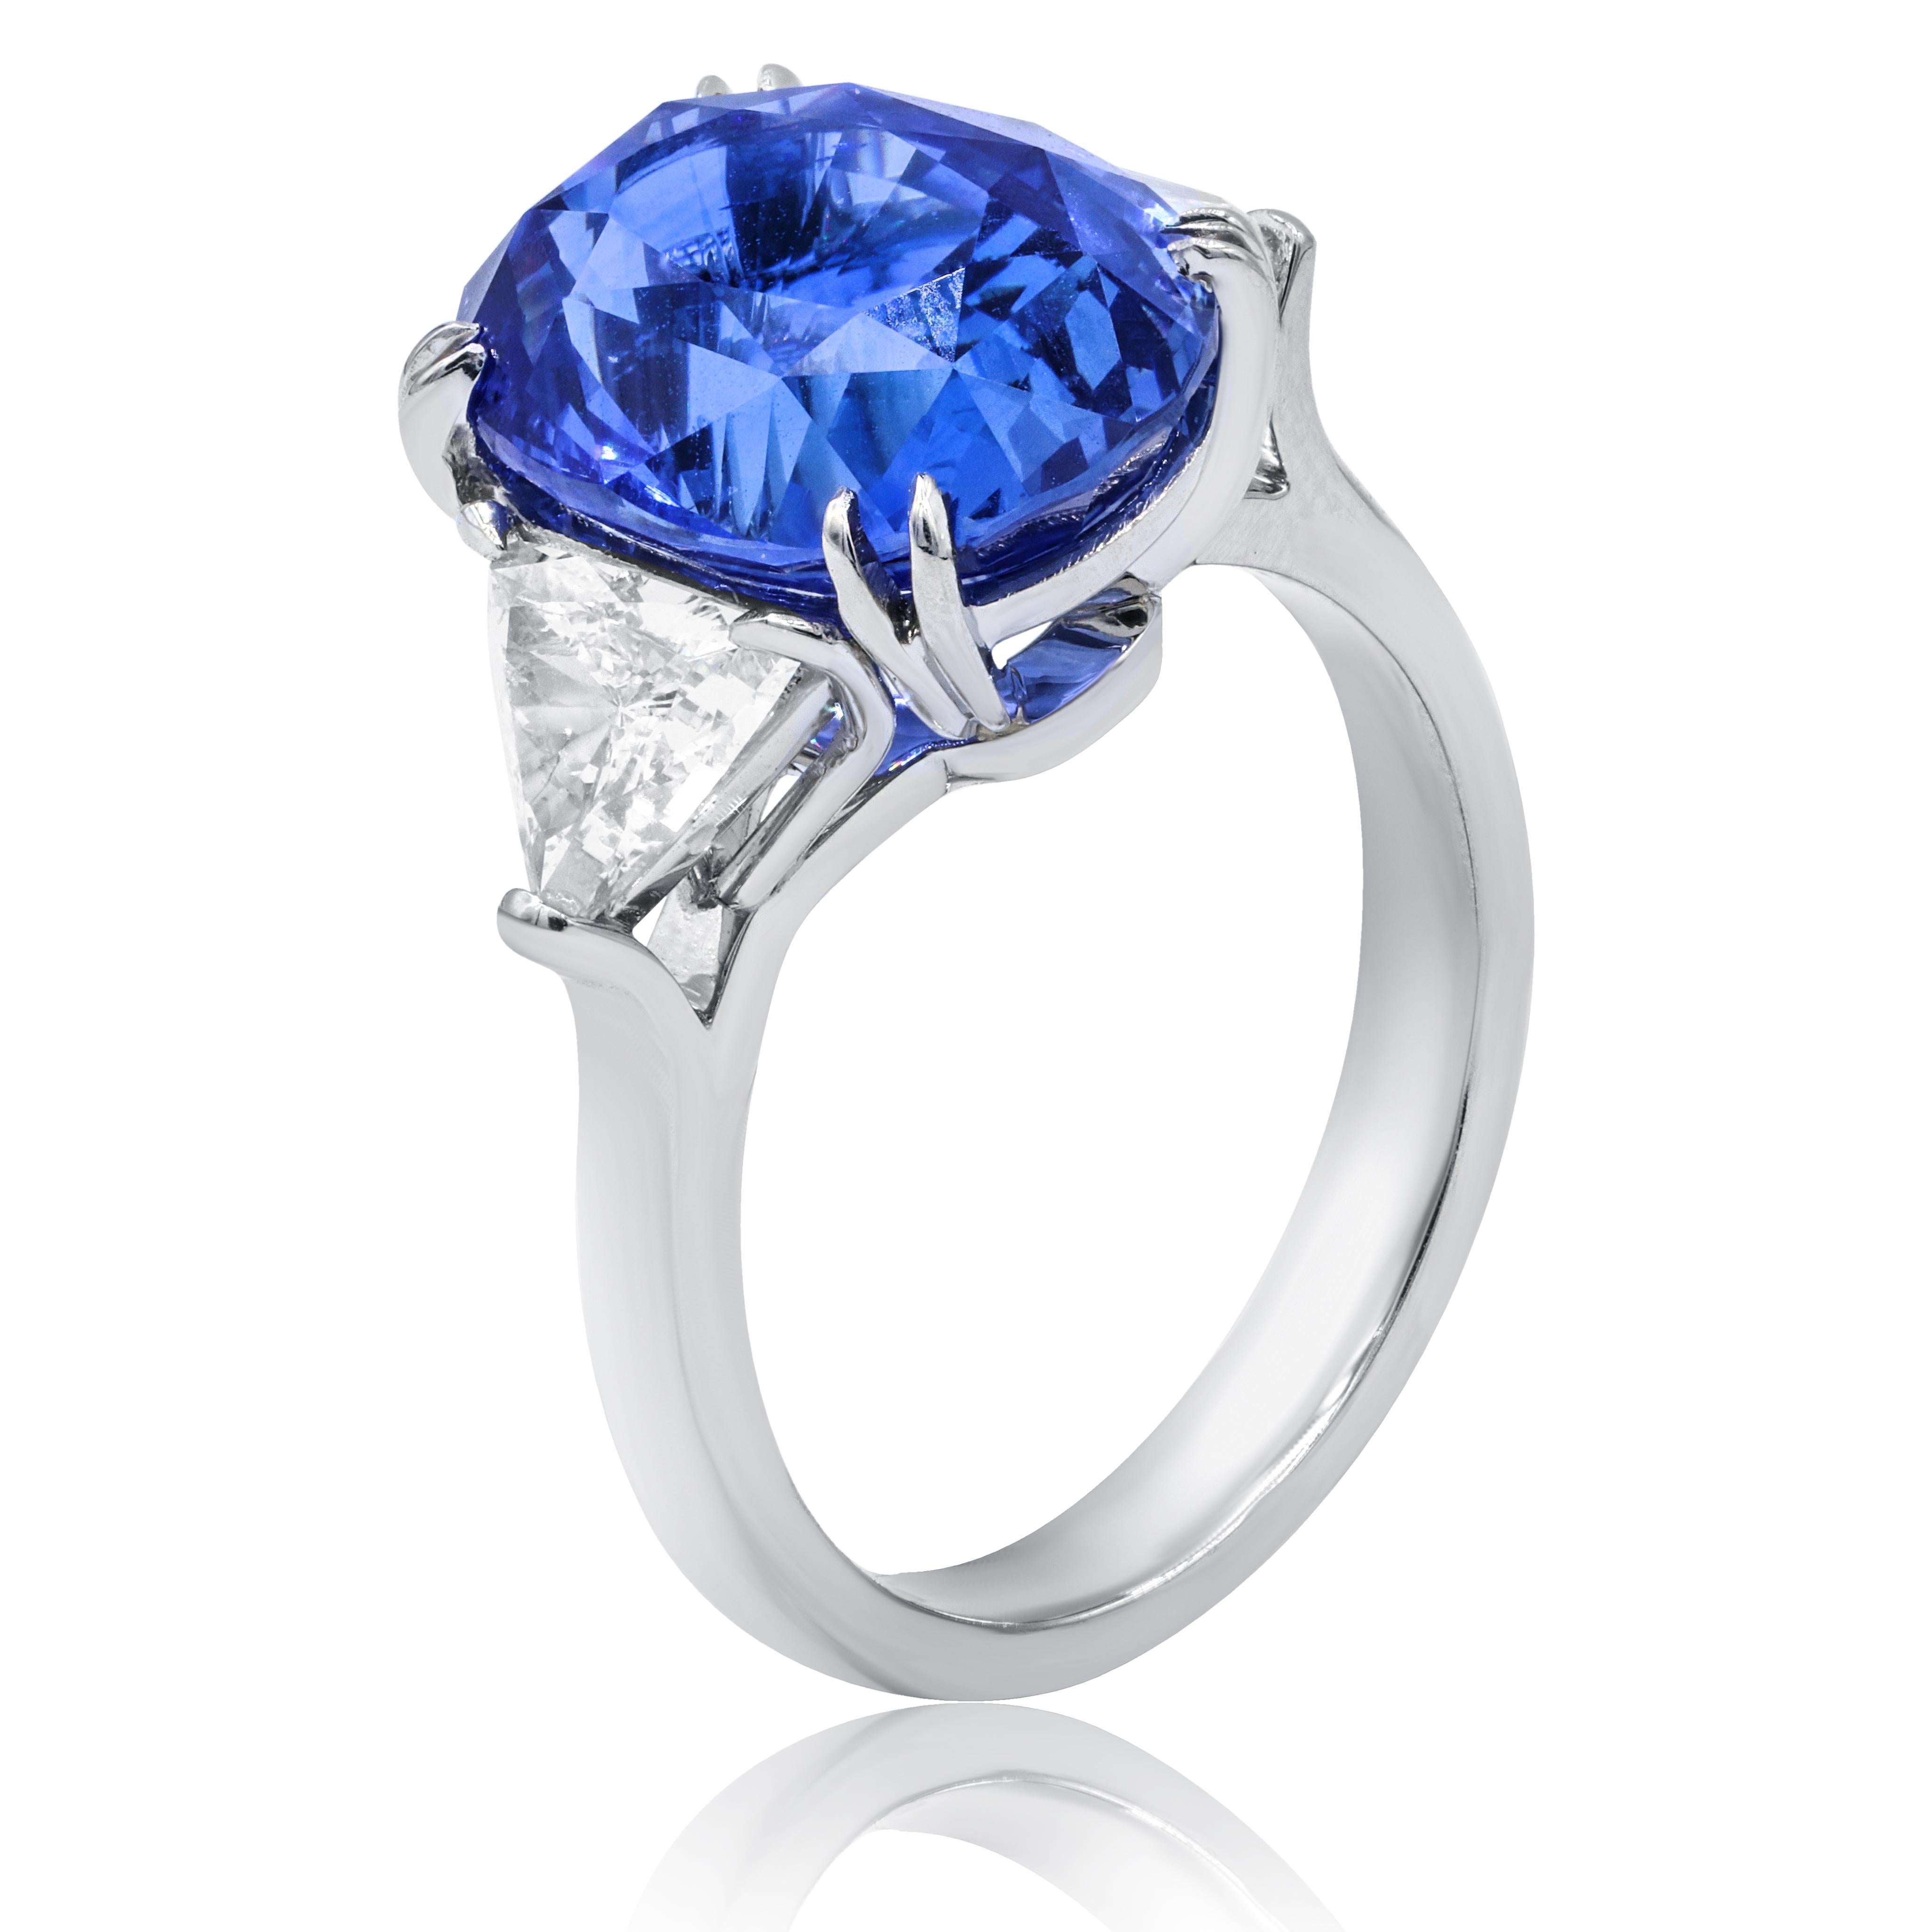 Bague saphir et diamant en platine 11,98 ct non chauffé  certifié ovale  saphir bleu de Ceylan naturel  avec 2 diamants de taille trillion sur le côté totalisant 1,27 cts certifiés  C. DUNAIGRE
A&M est un fournisseur de premier plan de bijoux fins